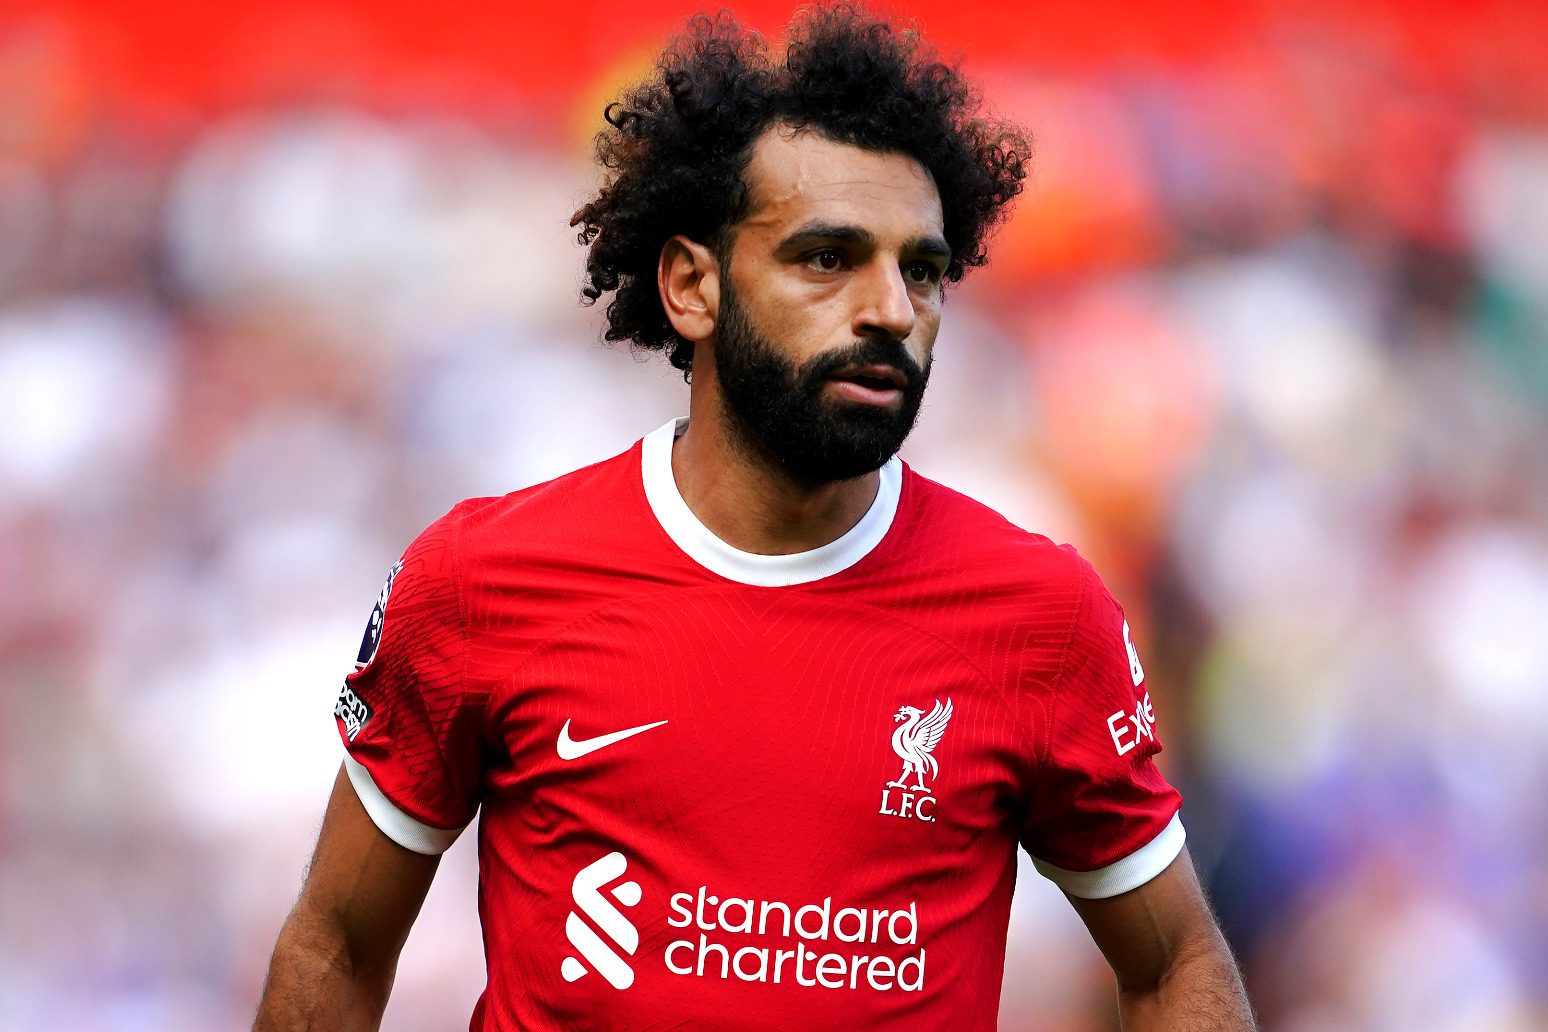 He’s essential to Liverpool: Jurgen Klopp dismisses Mohamed Salah transfer talk 